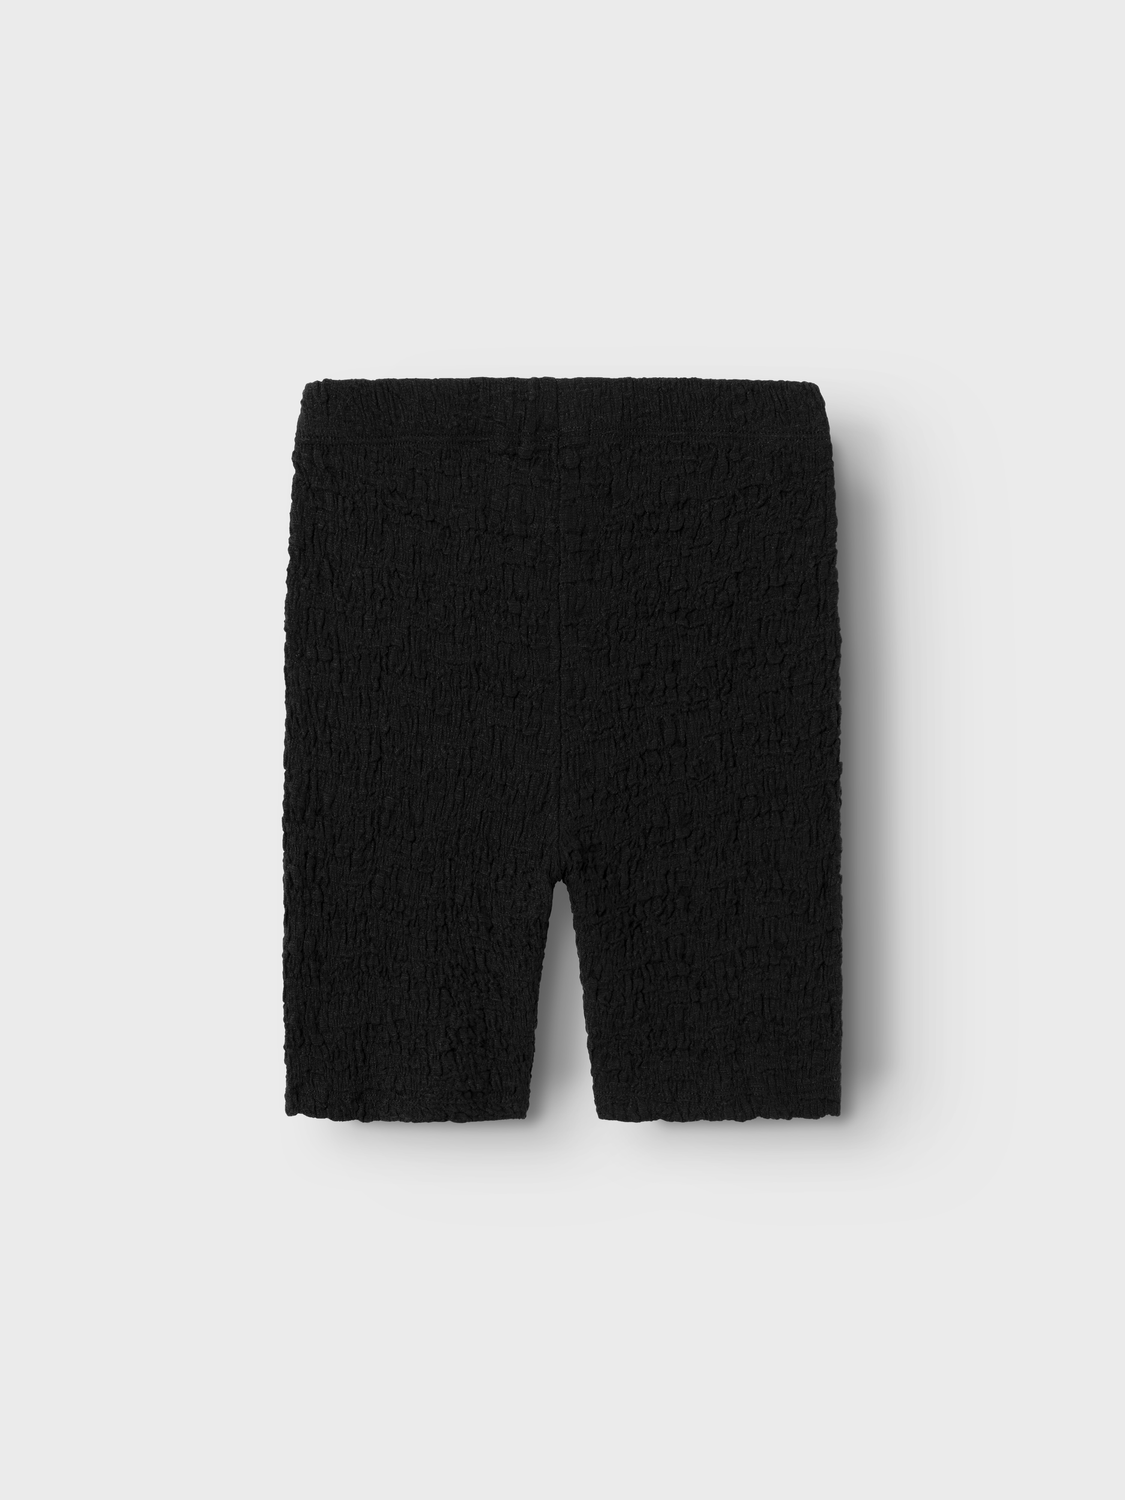 NKFHALISSE Shorts - Black